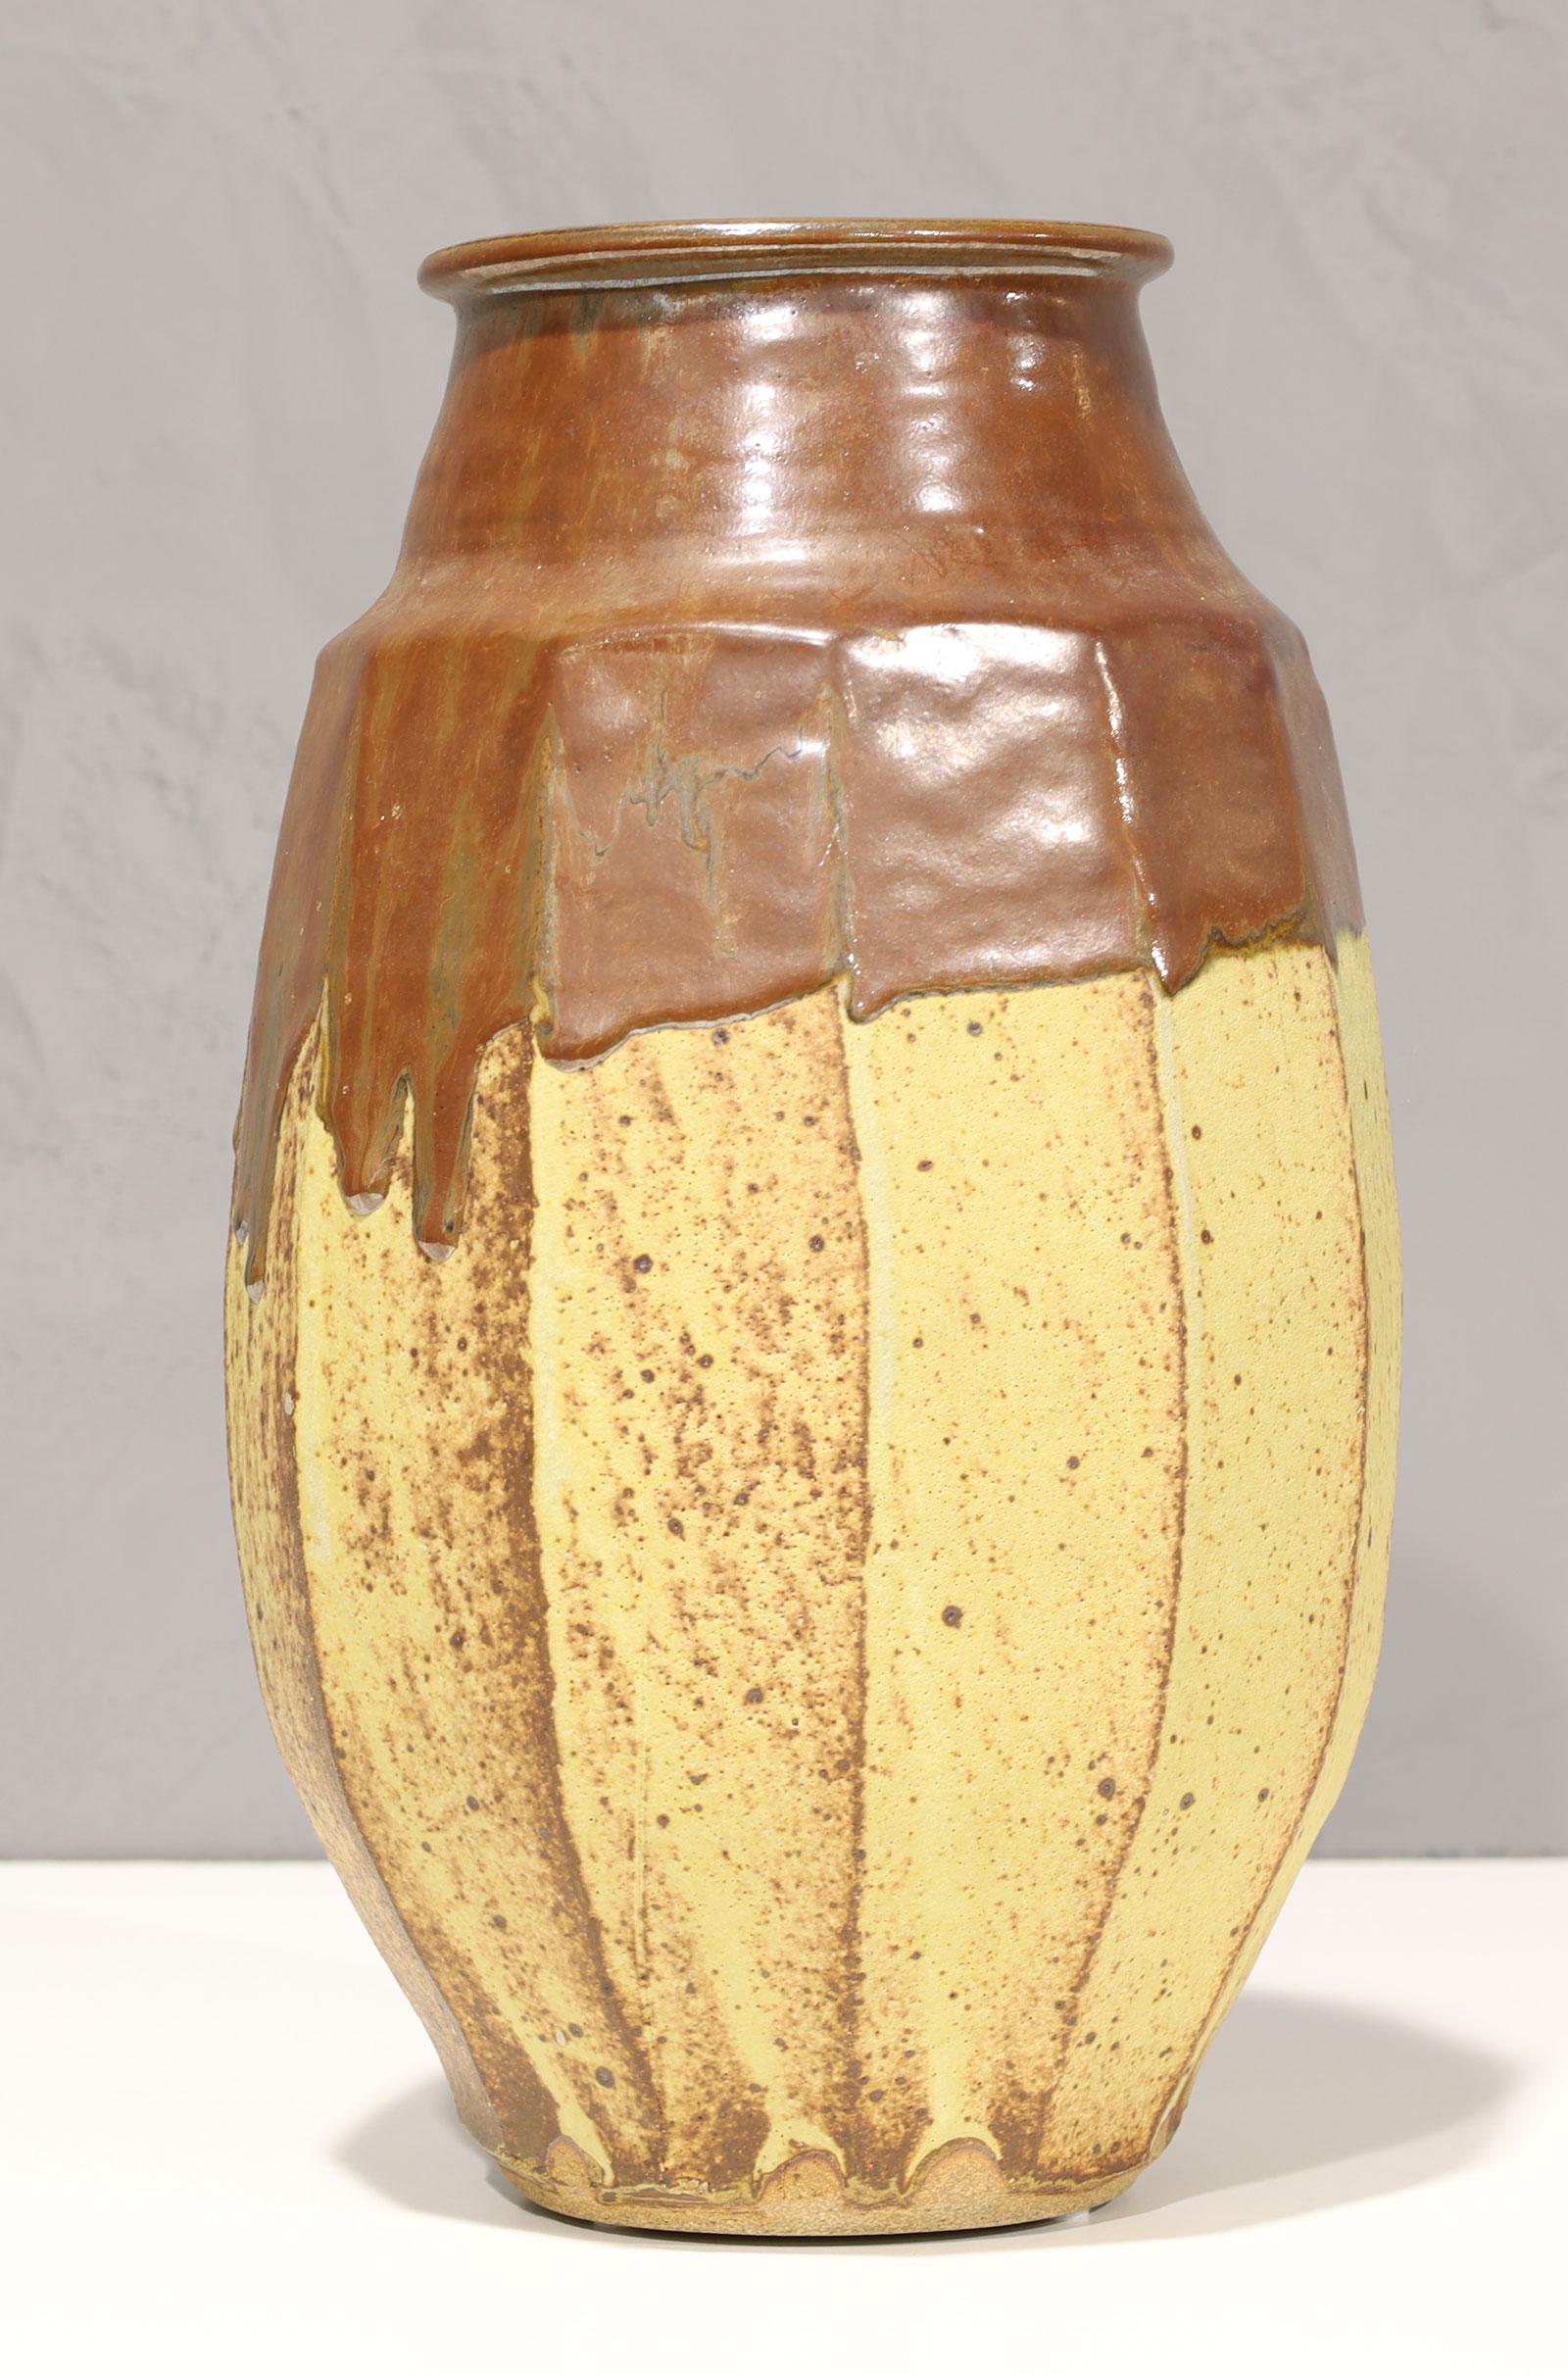 Warren MacKenzie est connu pour ses poteries fonctionnelles simples, tournées au tour, influencées par Bernard Leach et l'esthétique japonaise de l'œuvre de Shoji Hamada.

En 1950, MacKenzie et sa première femme Alix sont devenus les premiers